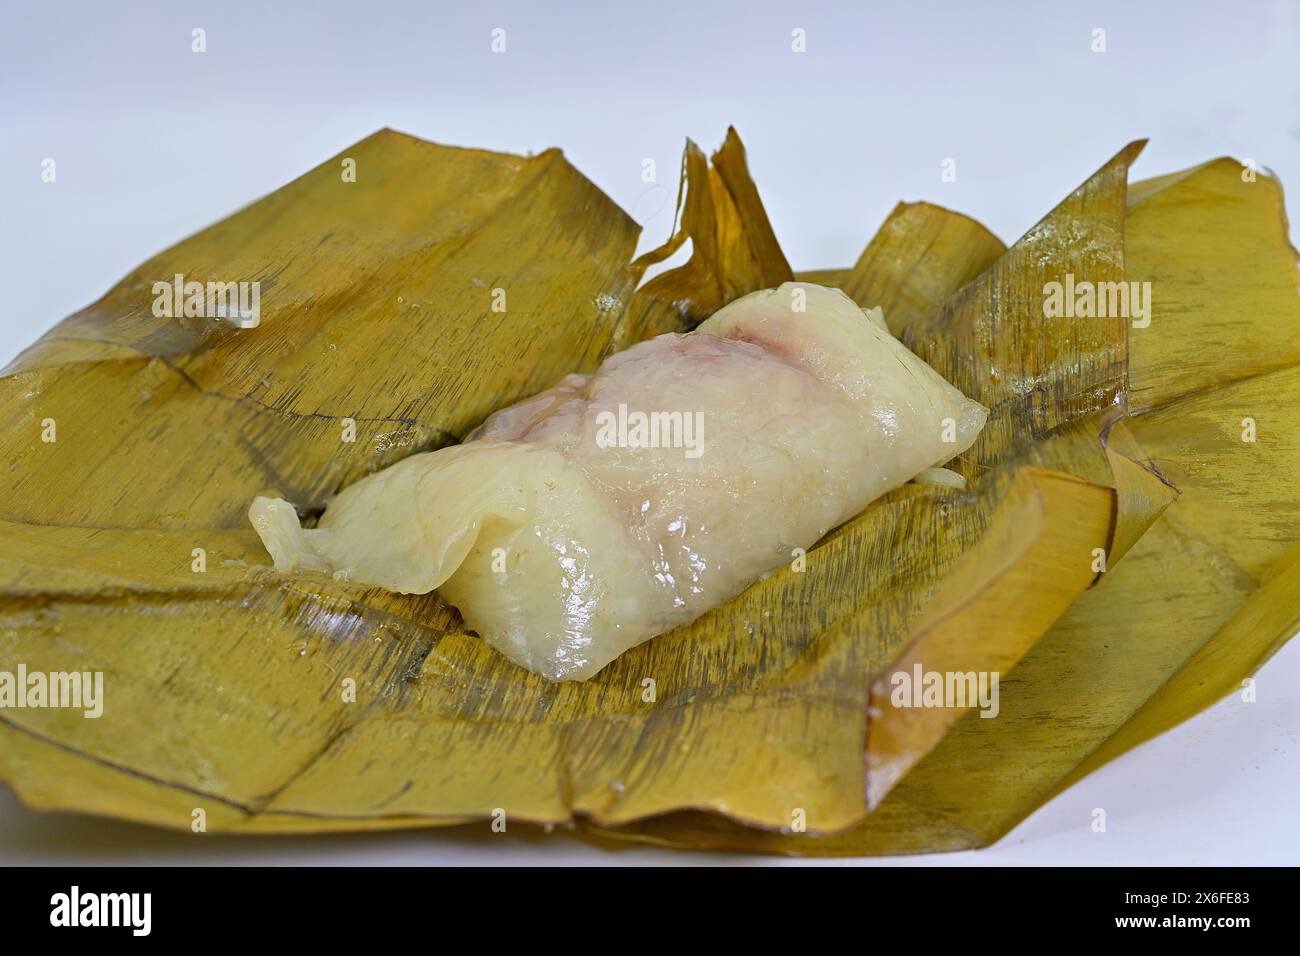 Khao tom mat, un popolare dolce tailandese fatto di riso glutinoso o appiccicoso al vapore, srotolato, su foglie di banana Foto Stock